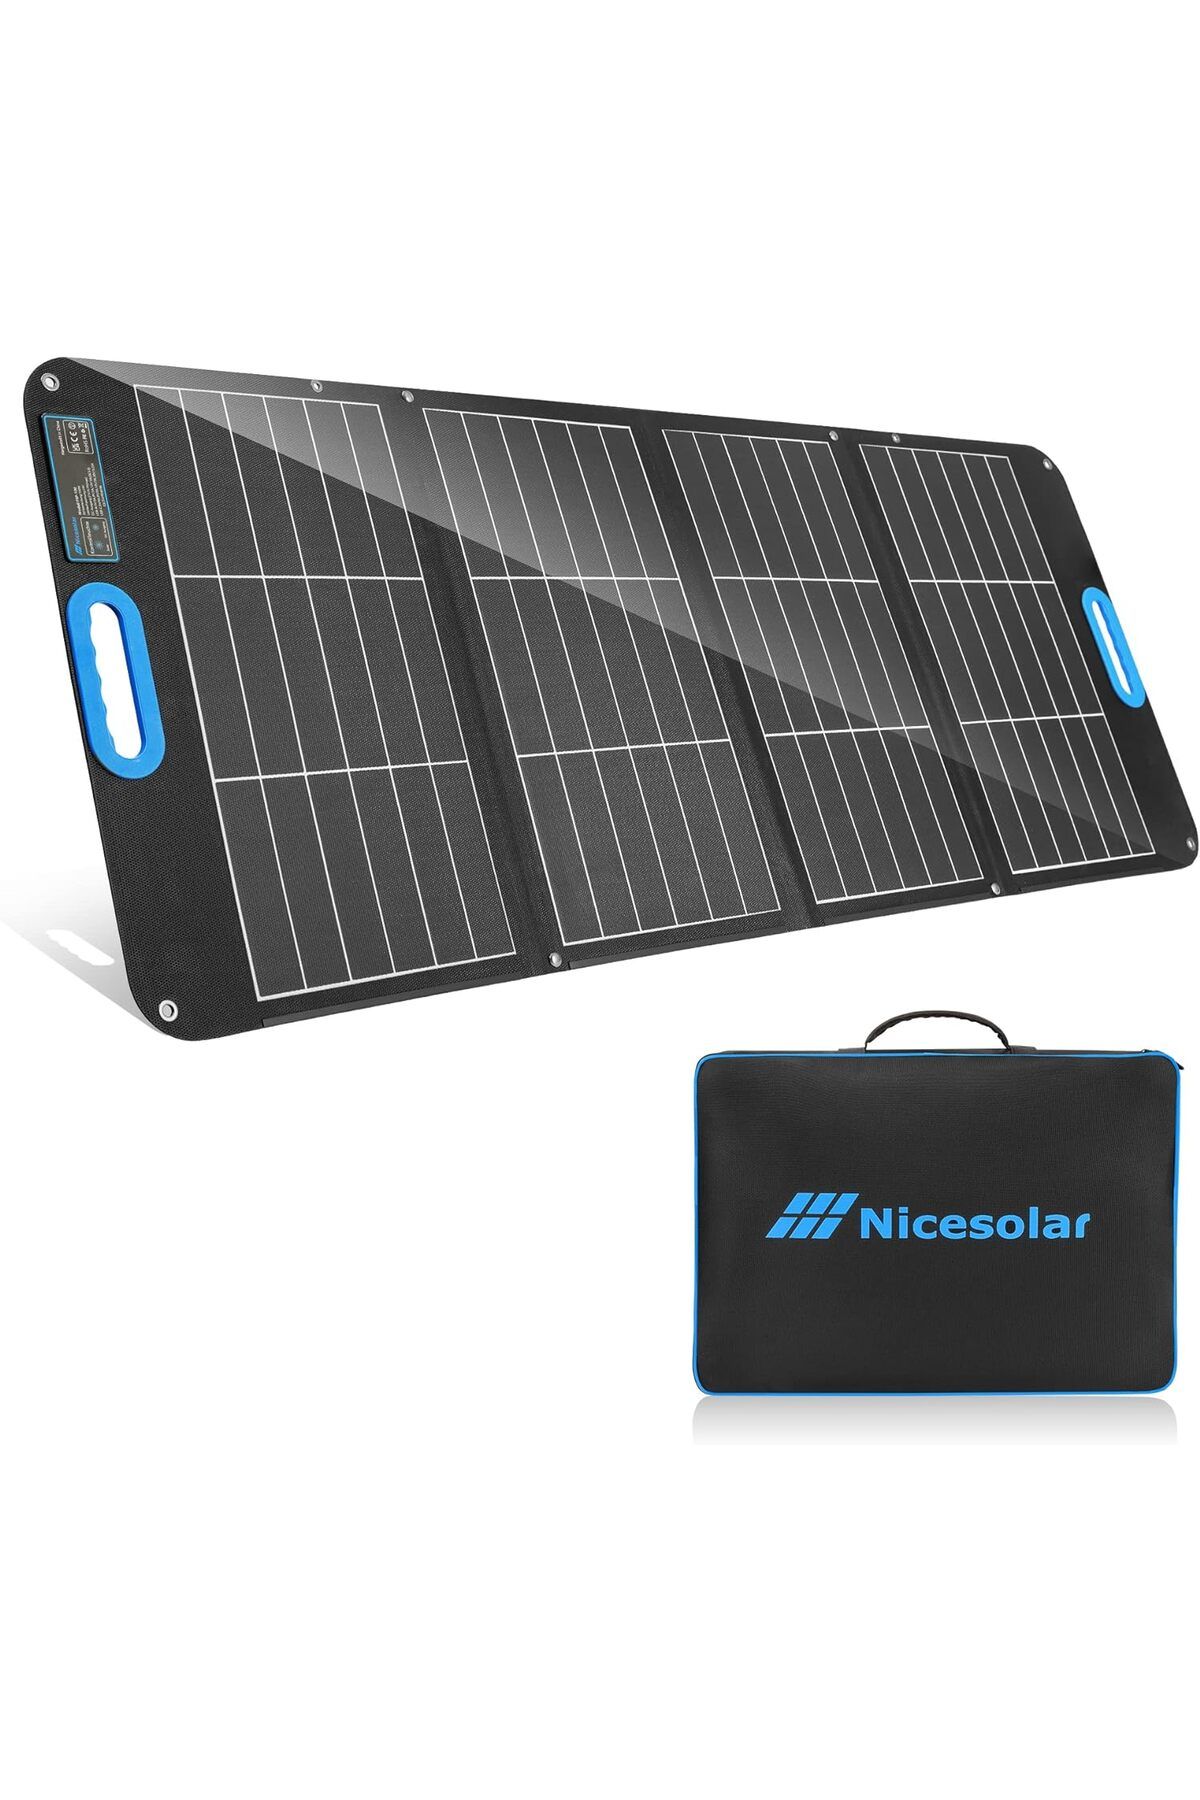 Nicesolar Katlanabilir 100W Güneş Paneli Taşınabilir Güç İstasyonu ve Güneş Enerjisi Jeneratörü için